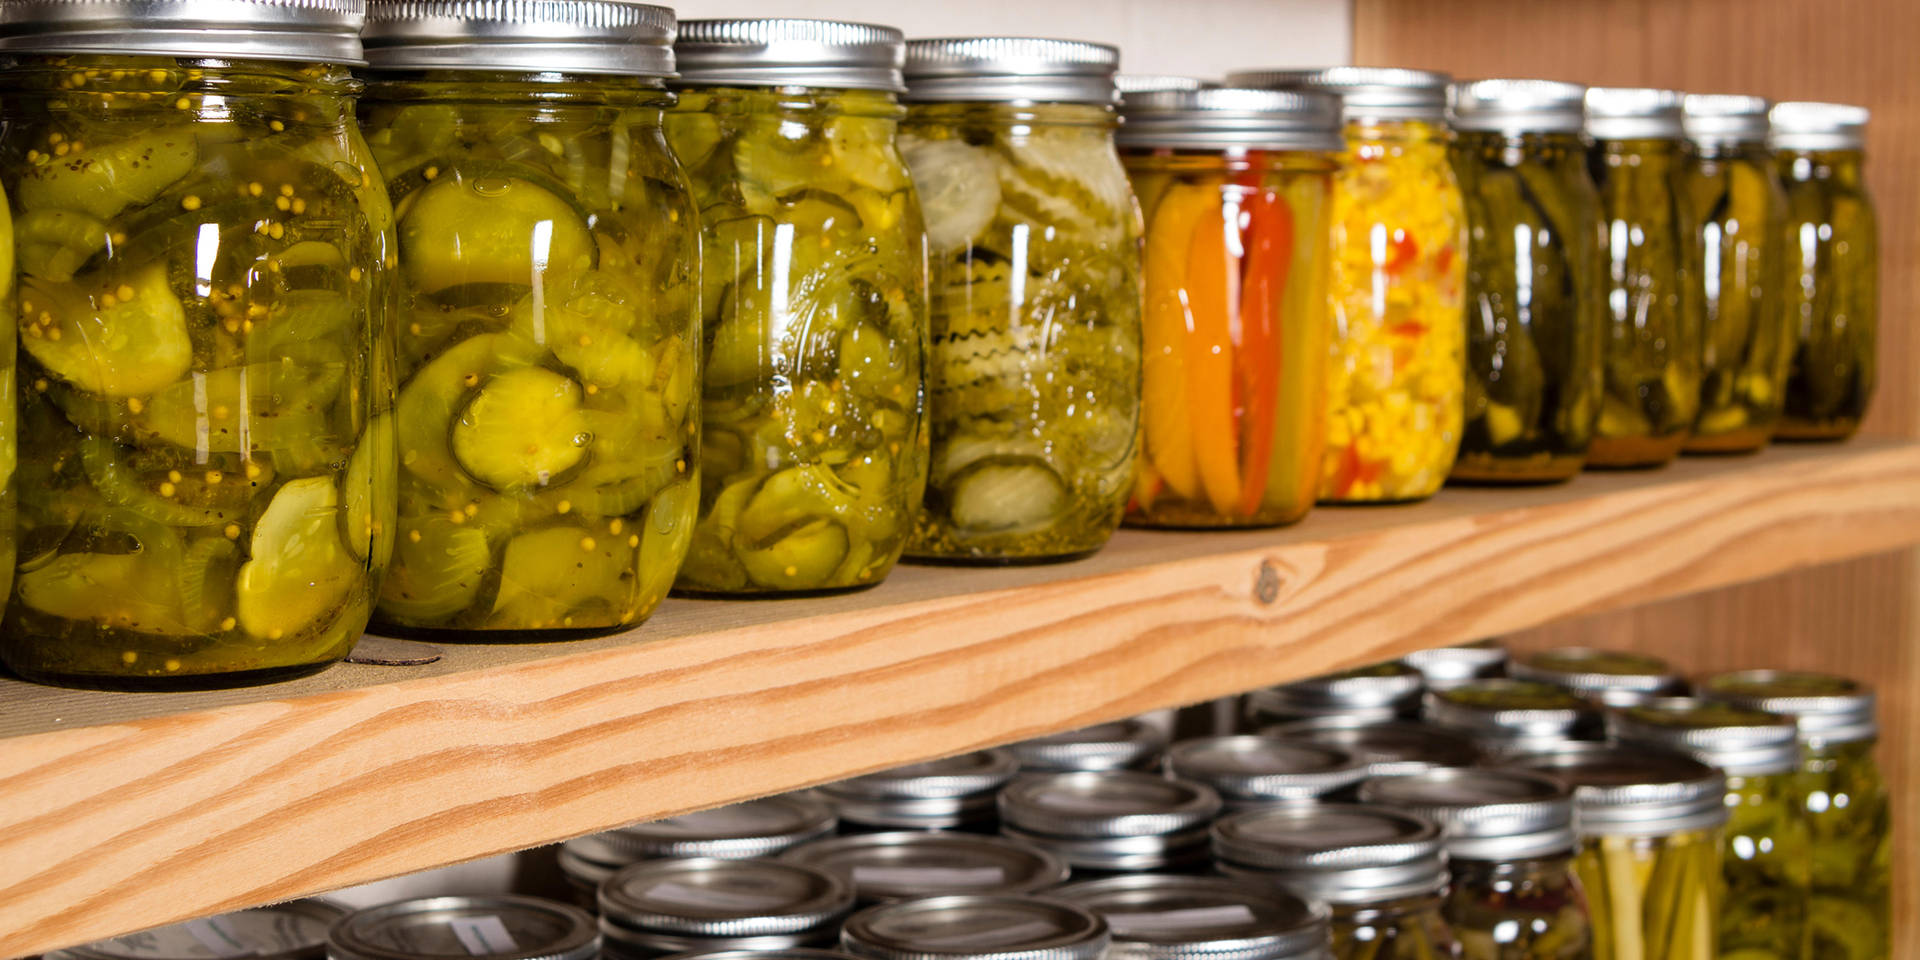 Pickles In Wooden Shelf